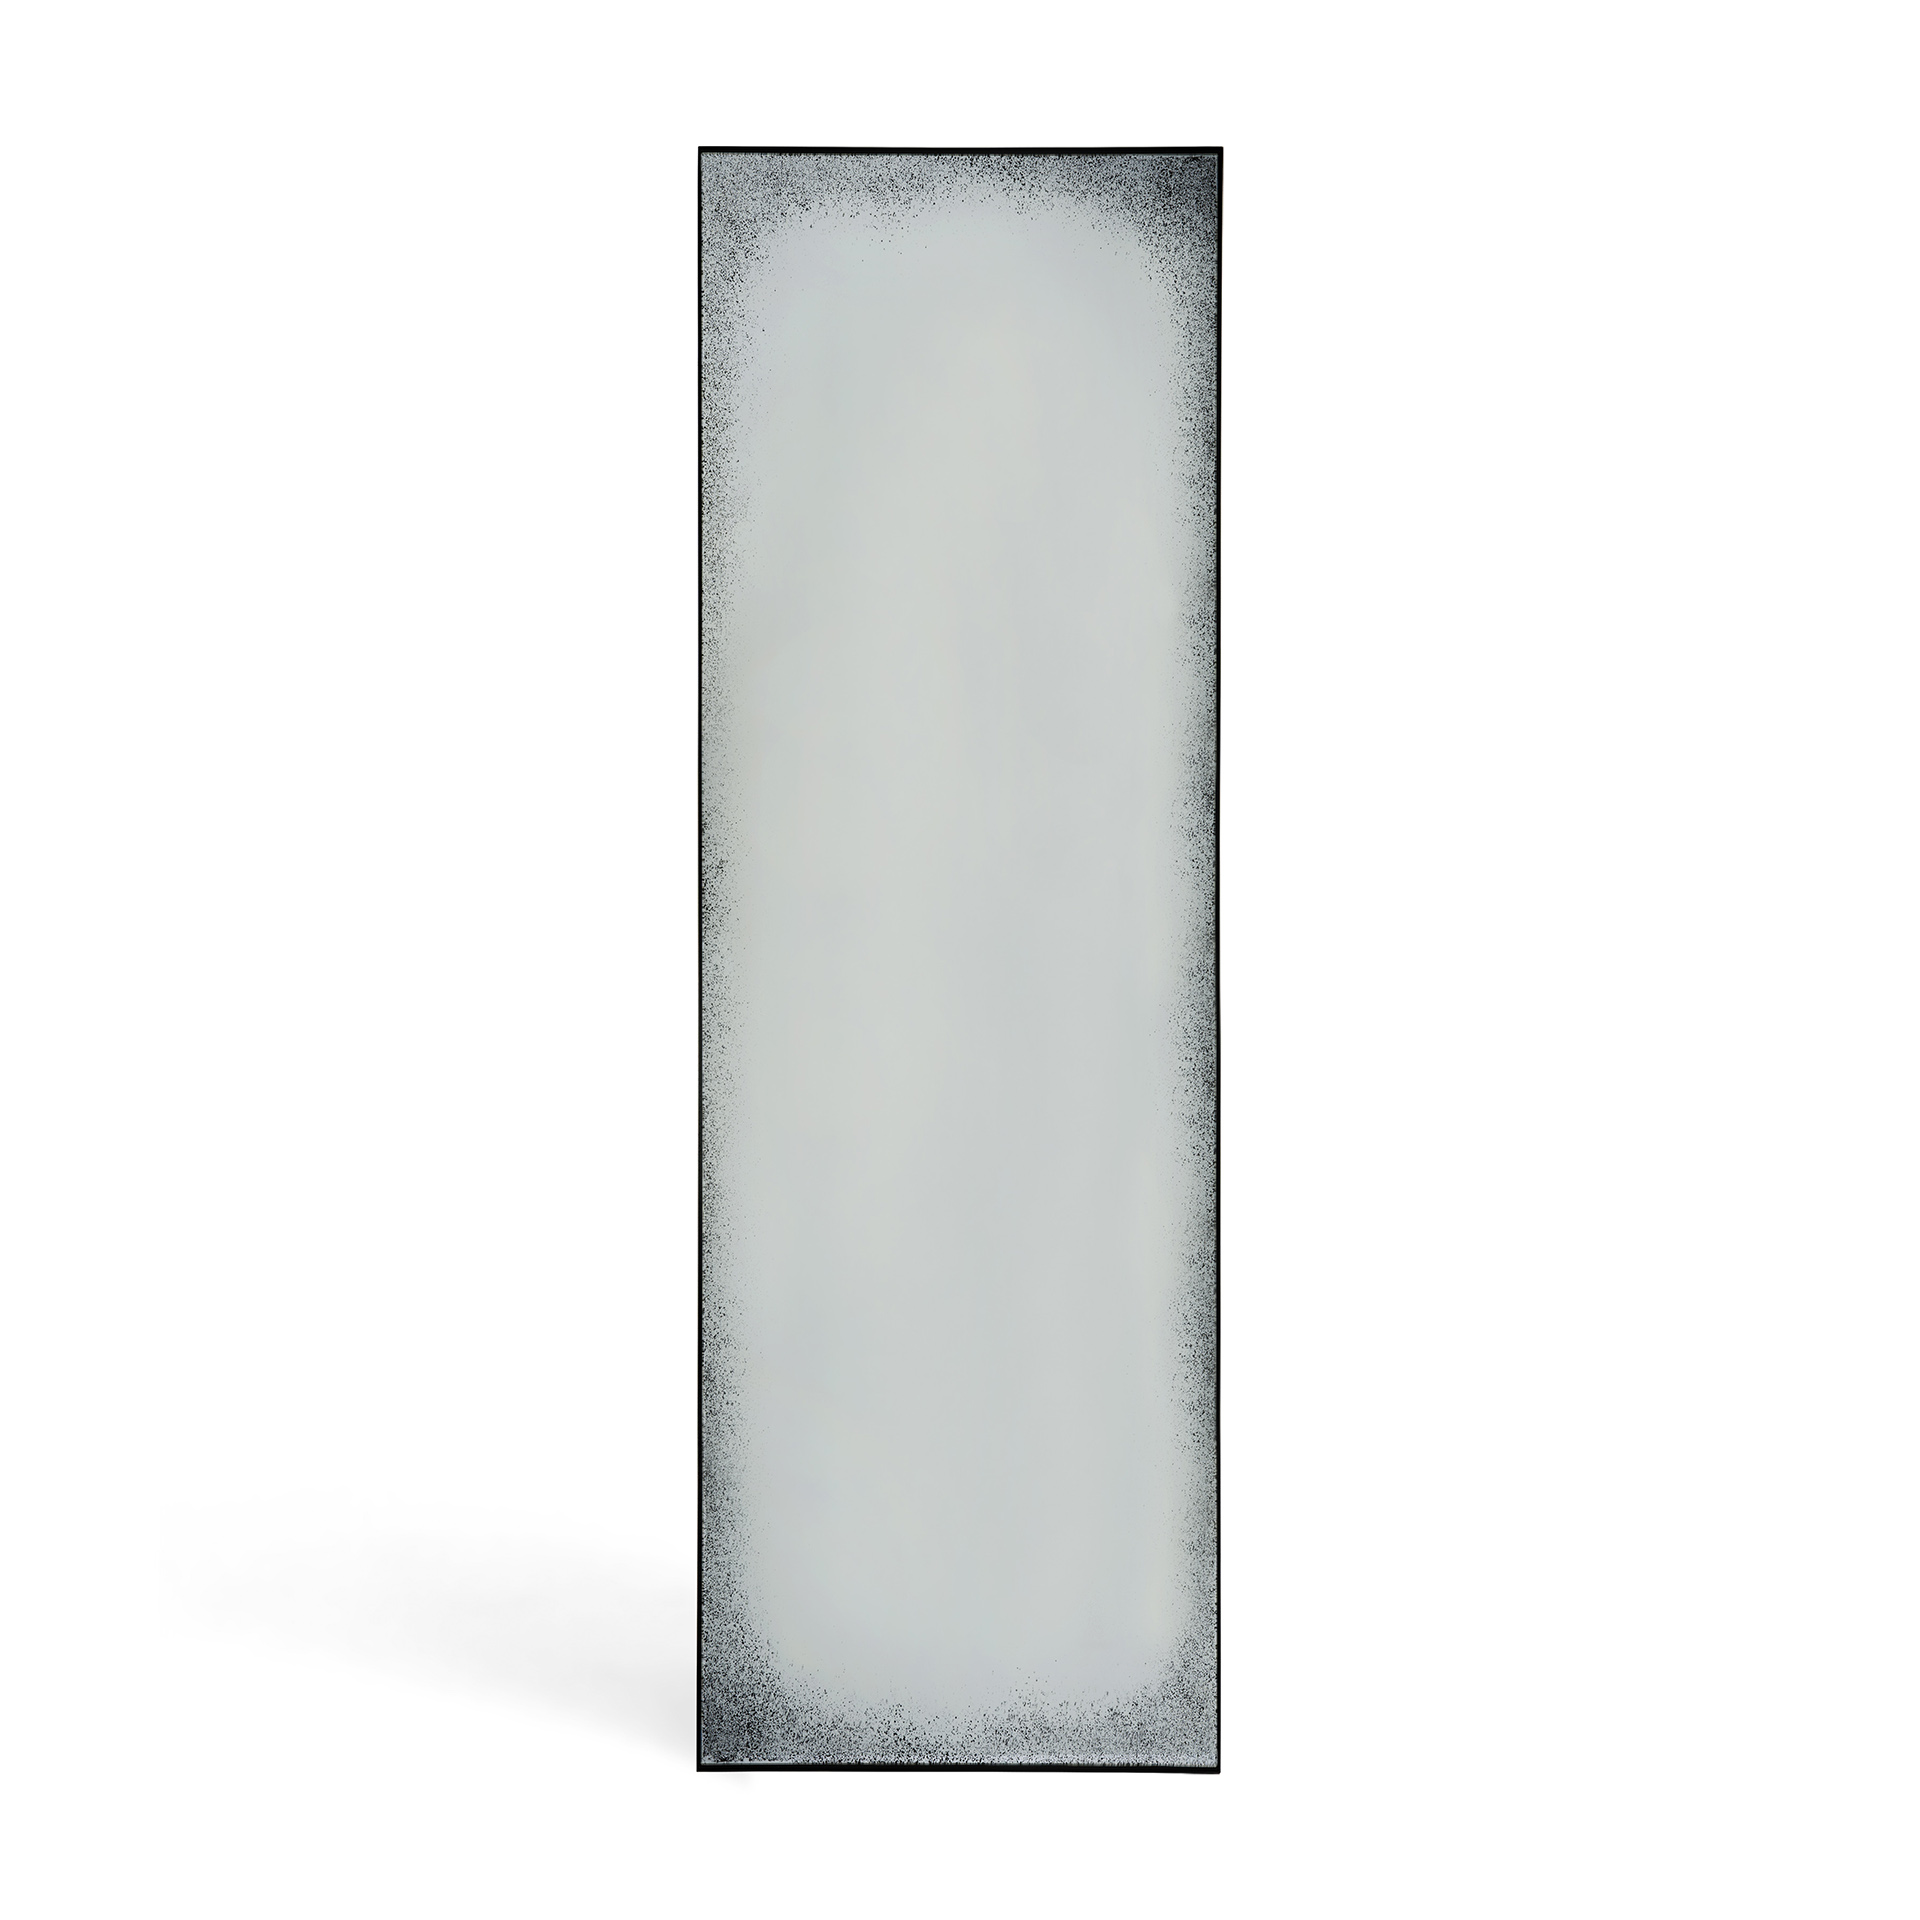 Ethnicraft - Aged Clear vloerspiegel zwart metaal frame (71 x 3 x 244 cm)